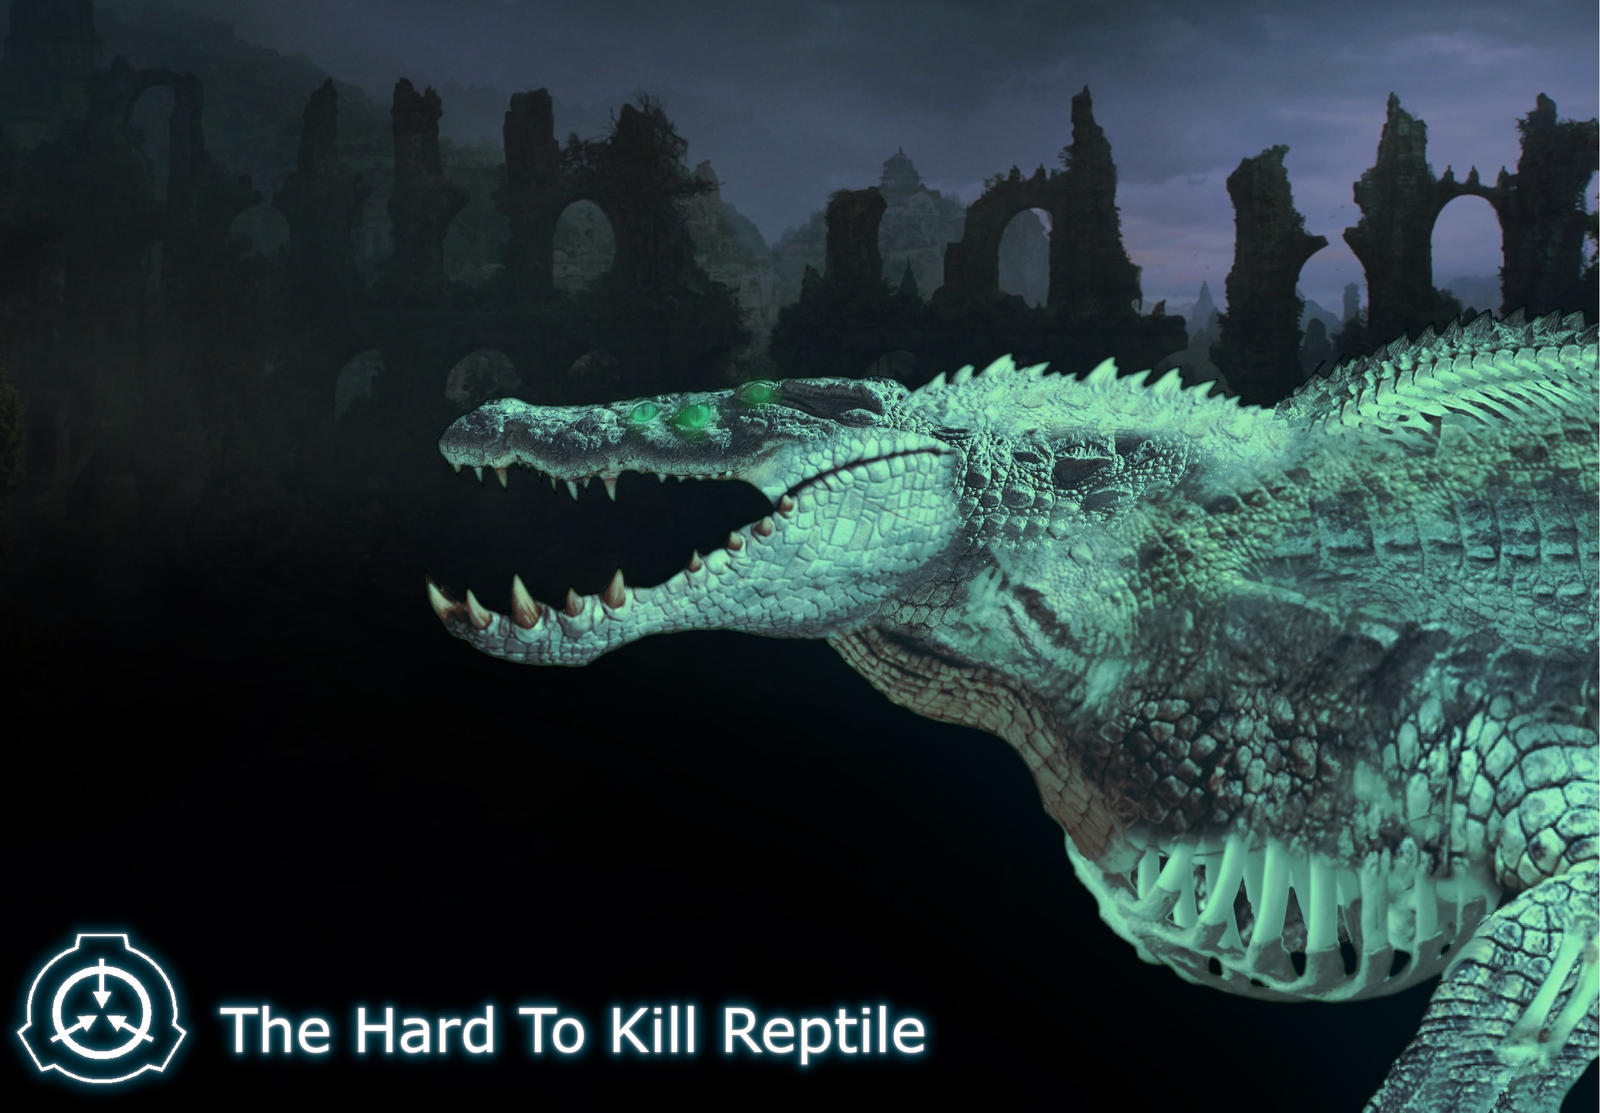 SCP-682,The Hard Kill Reptile